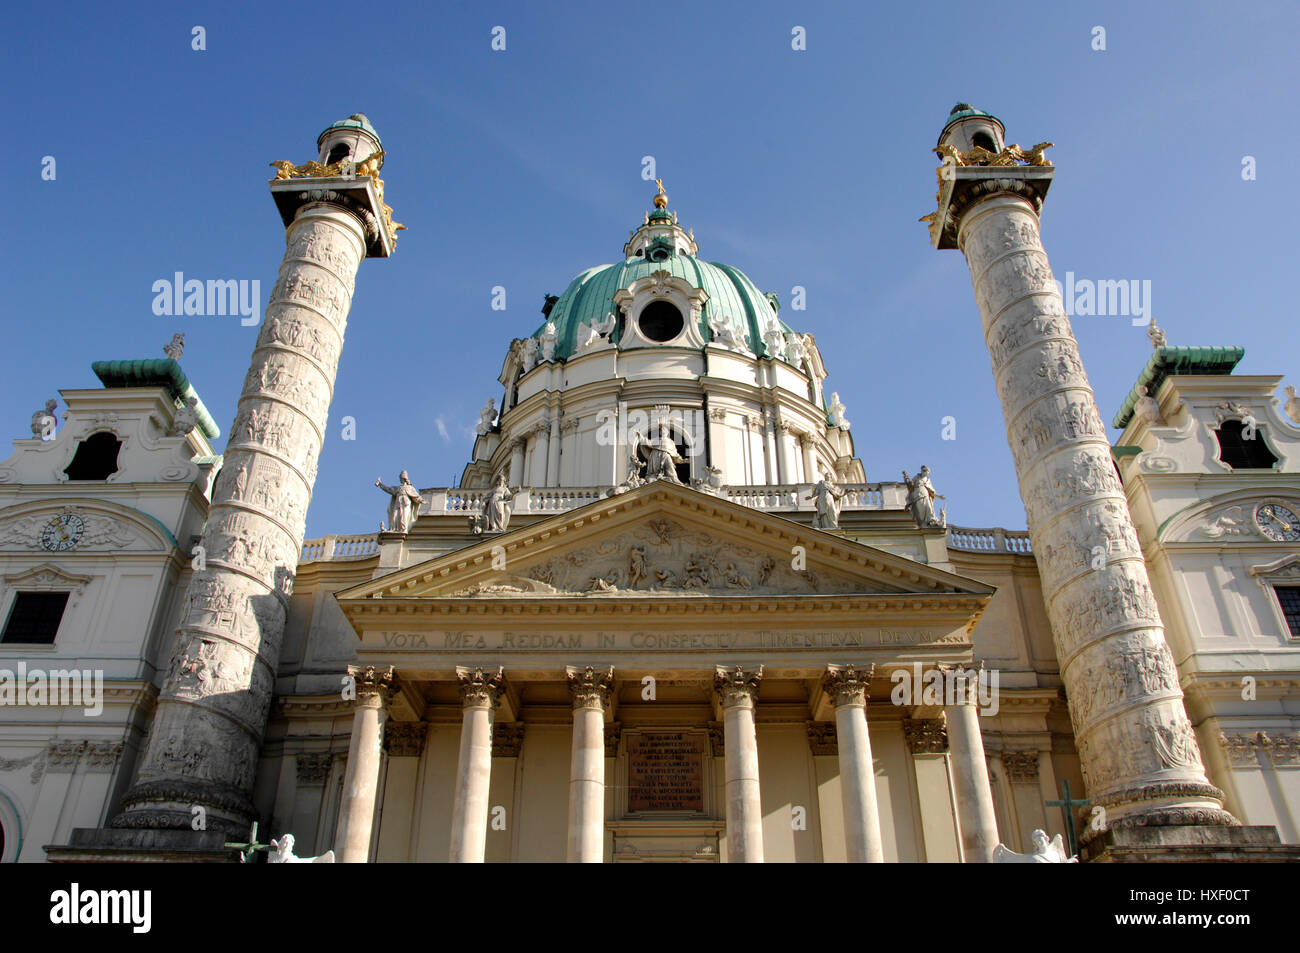 Die barocke Karlskirche römisch-katholische Kirche (St. Charles Church) wurde im Jahre 1737 fertiggestellt und befindet sich am Karlsplatz in Wien. Die Kuppel ist flankiert b Stockfoto